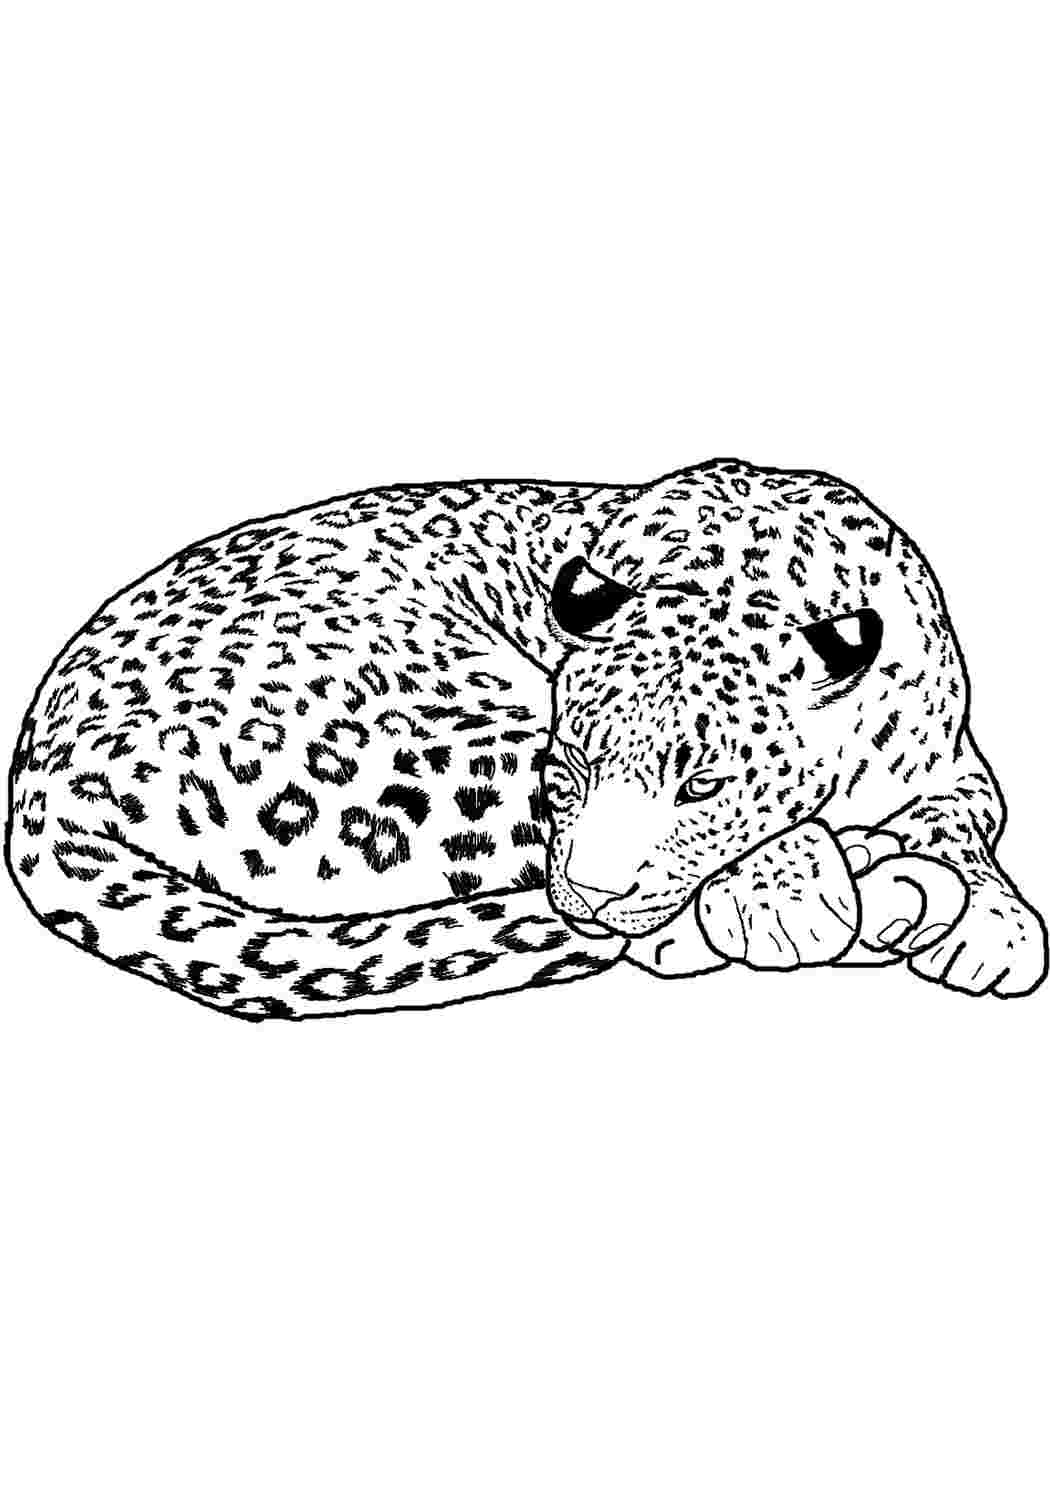 Леопард раскраска сложная